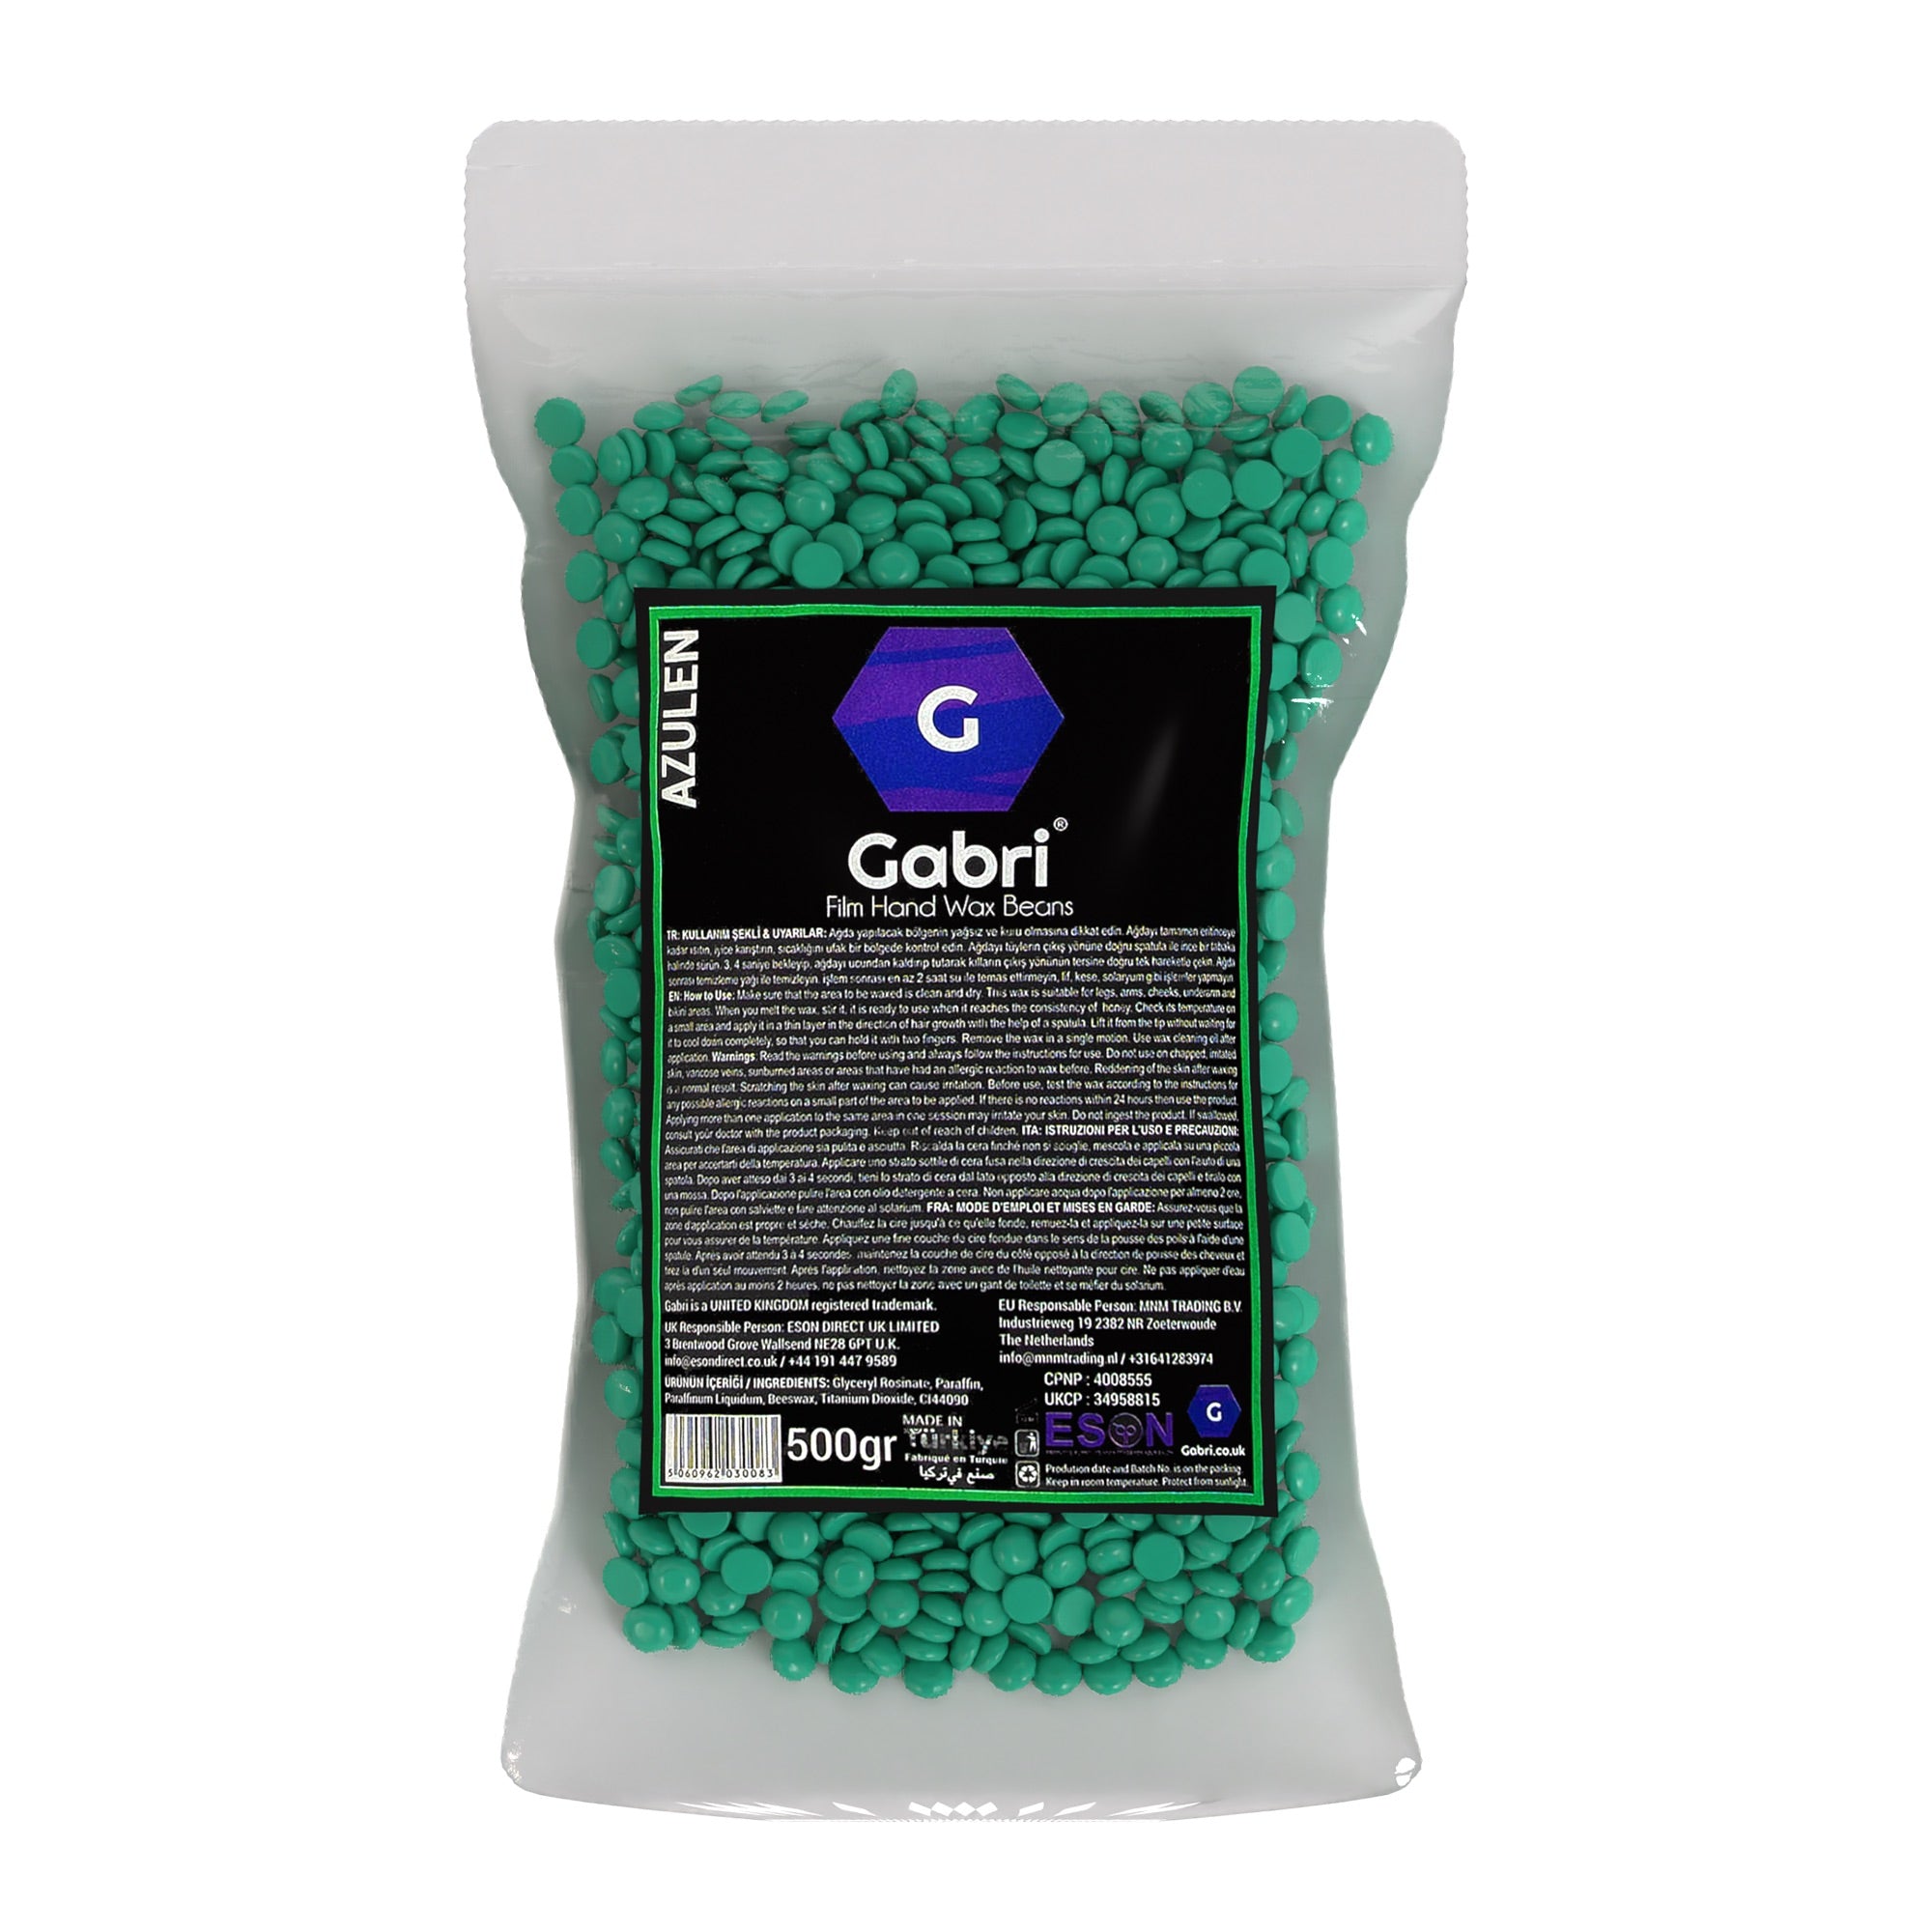 Gabri Professional - Hair Removal Hot Wax Film Hand Wax Beans Azulen 500g